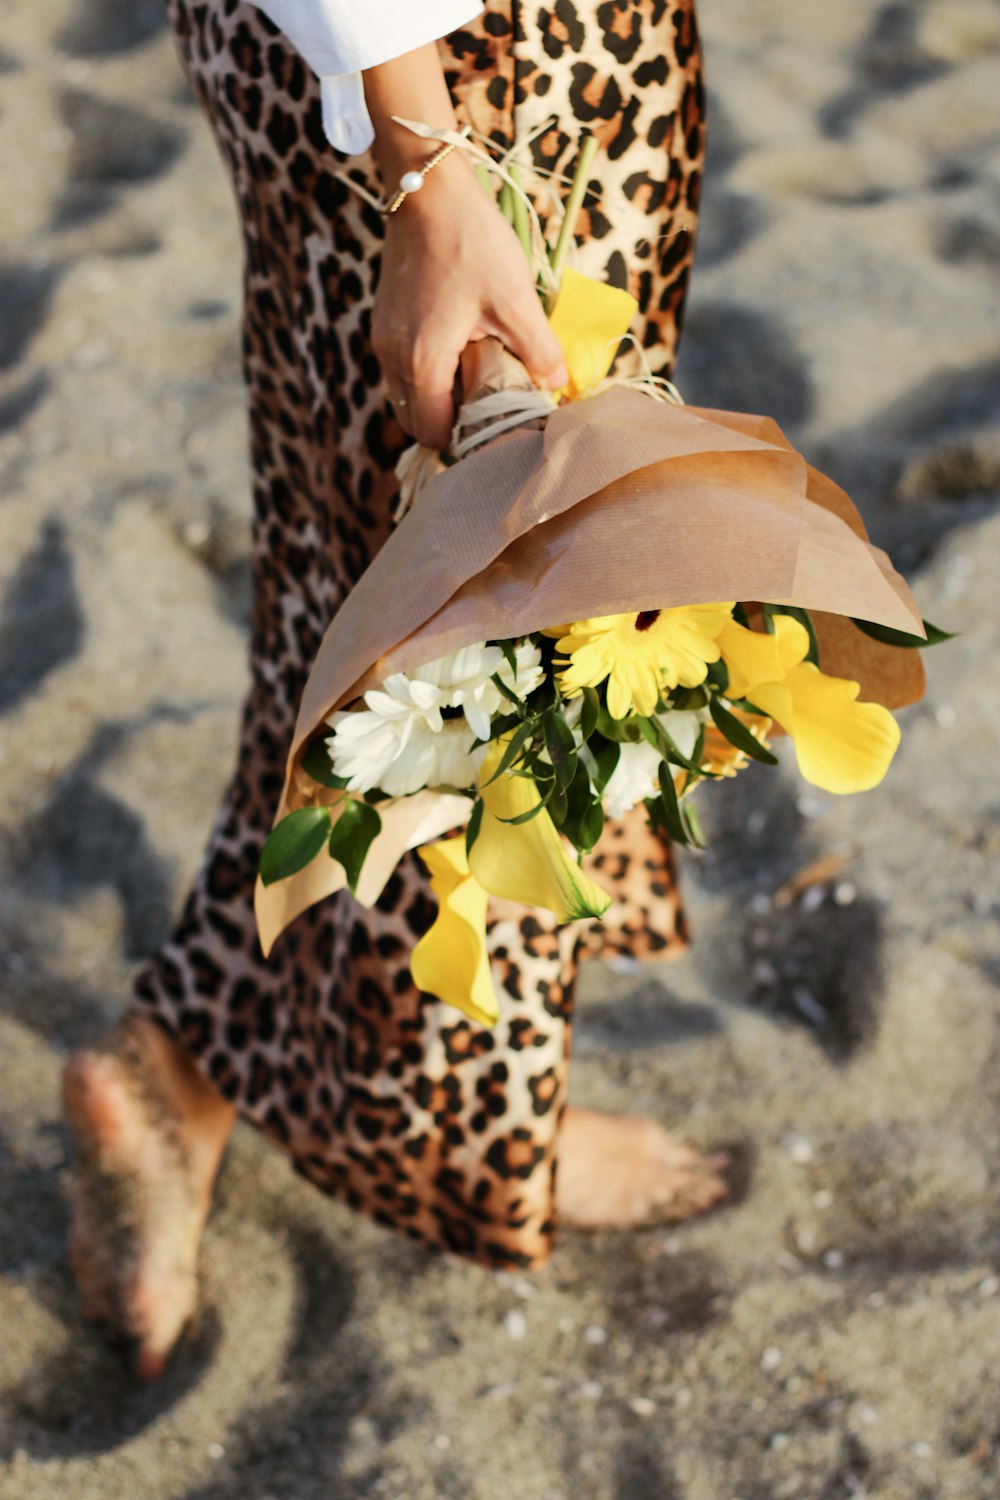 Personne en pantalon imprimé léopard marron et noir tenant des fleurs jaunes